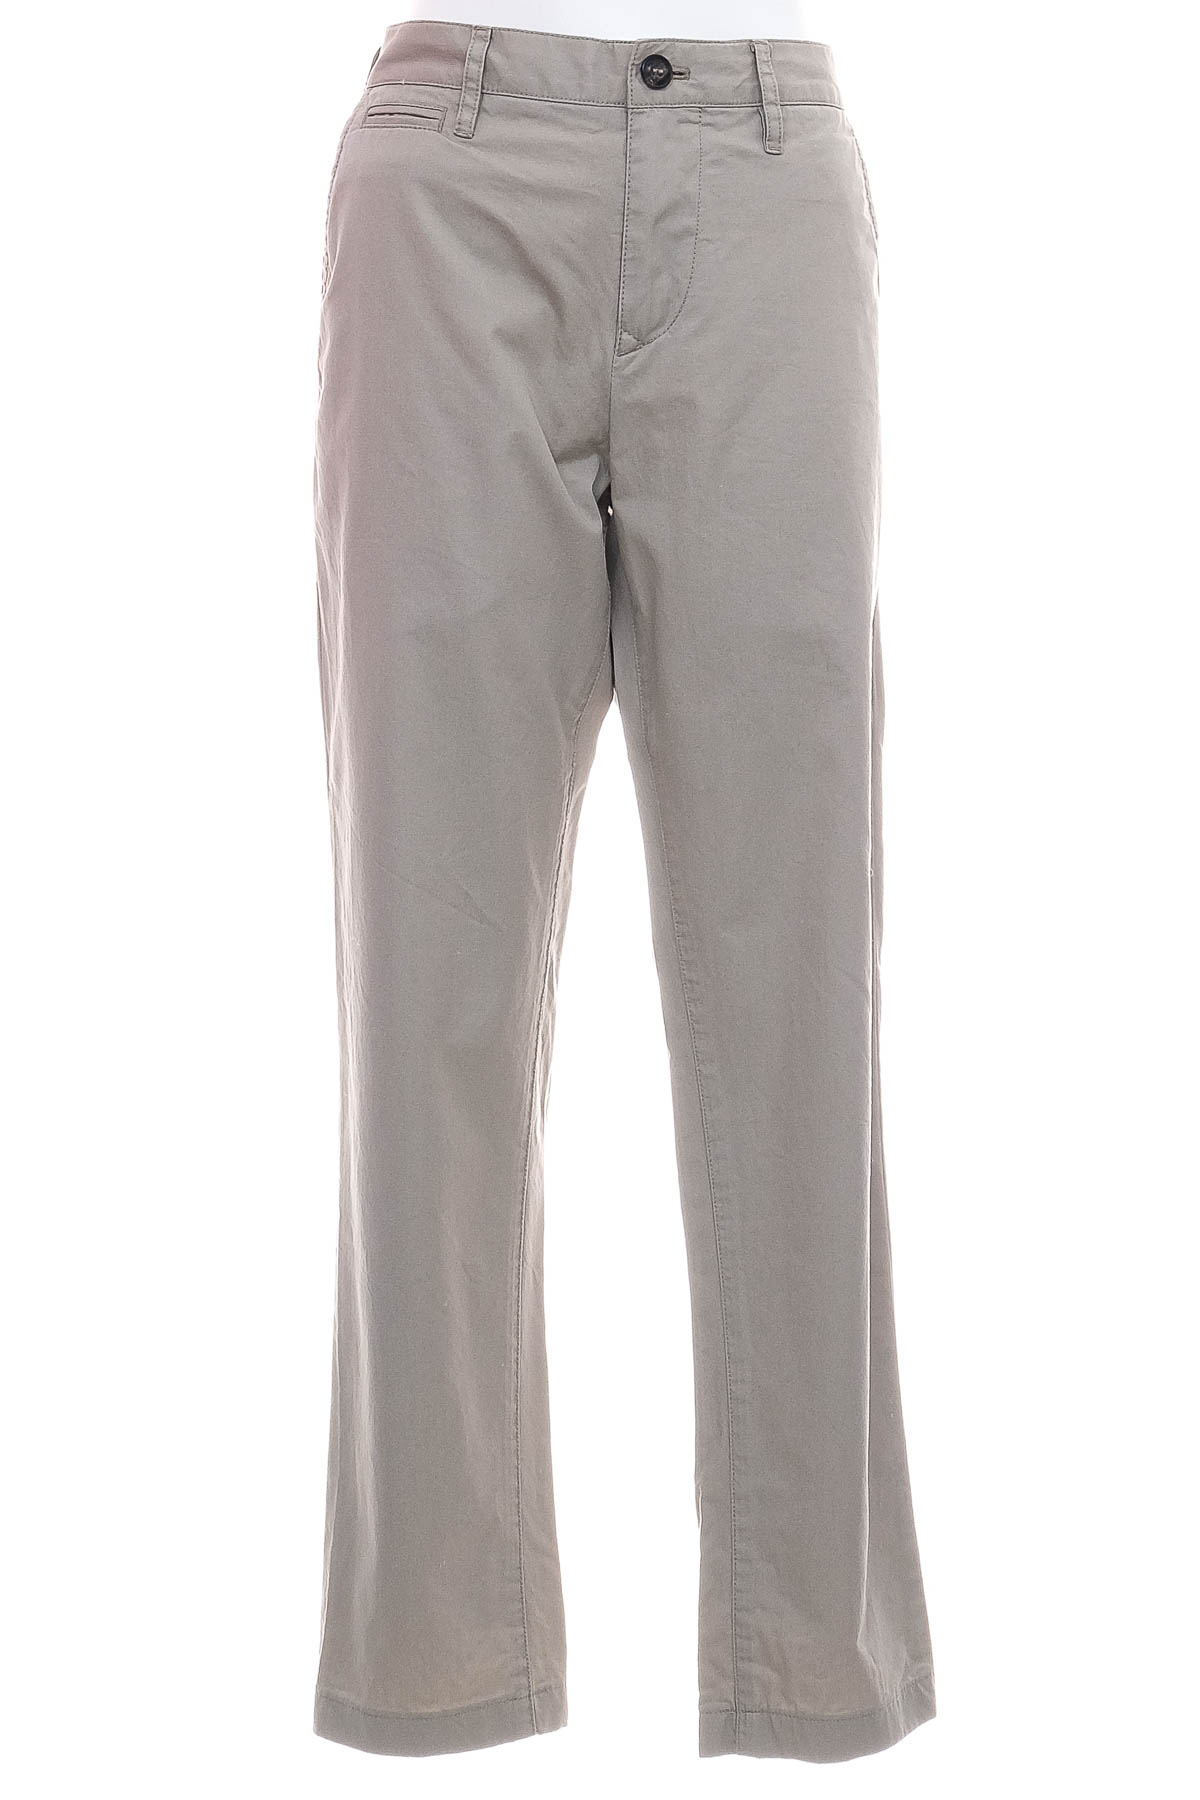 Pantalon pentru bărbați - Burberry - 0